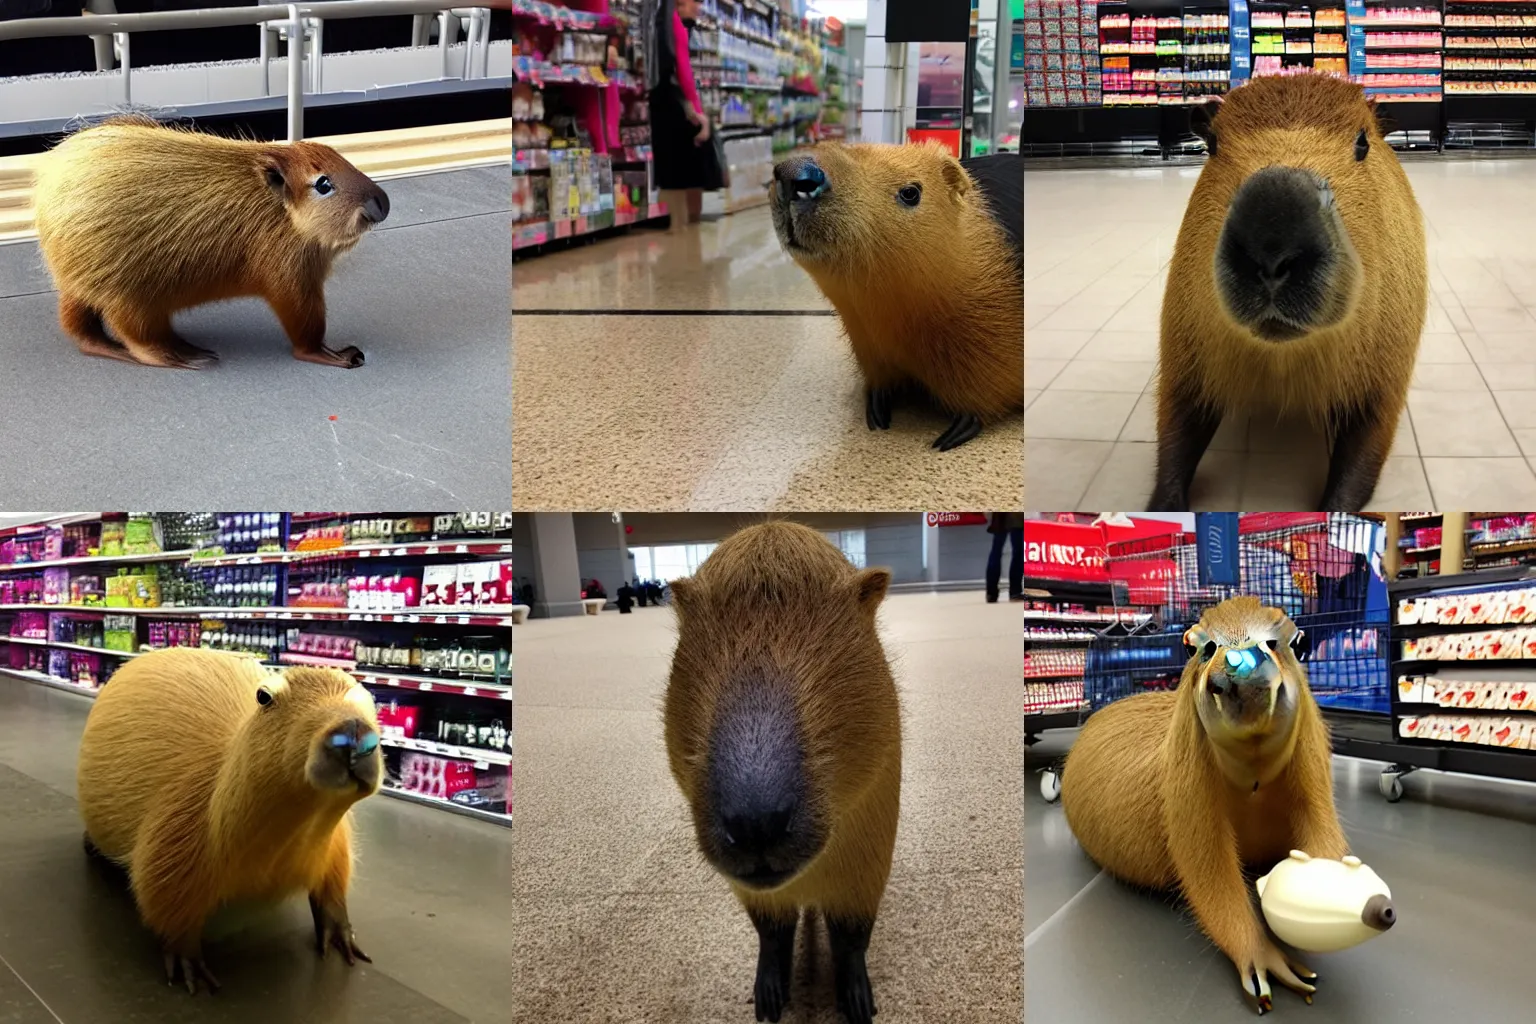 Prompt: capybara at target